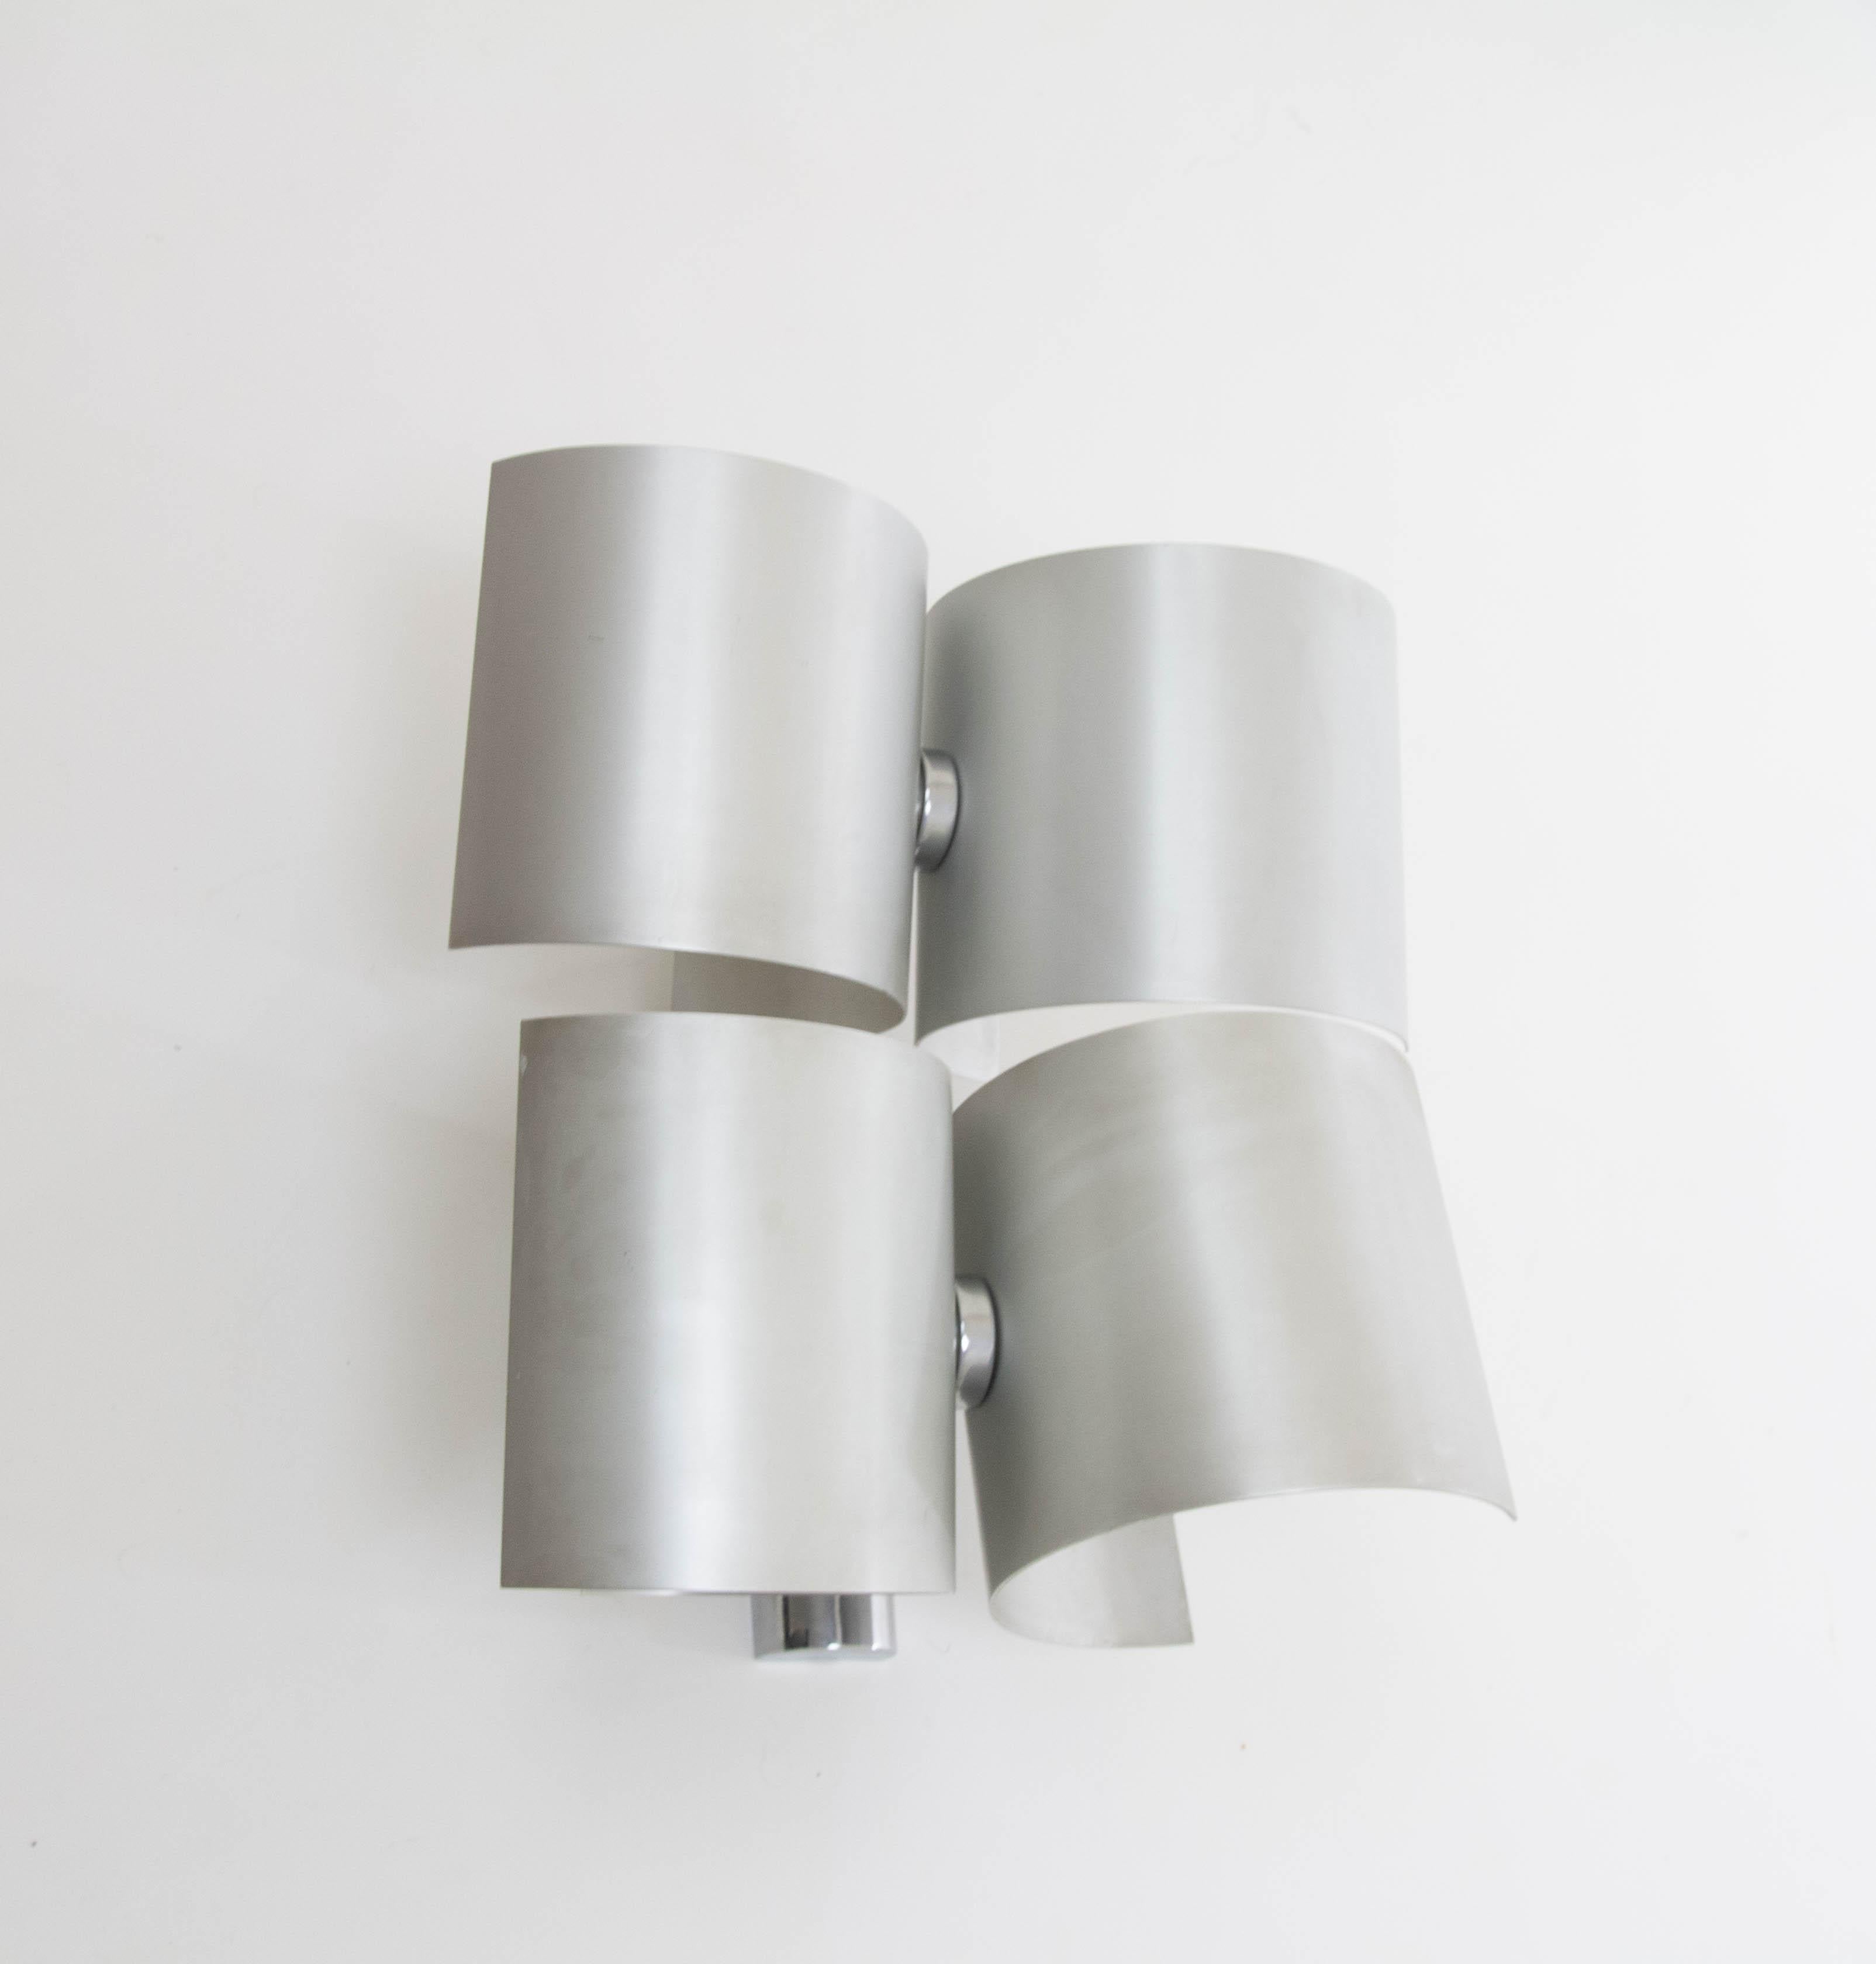 Applique produite par Nucleo Sormani dans les années 1970.

La lampe se compose de quatre pièces d'aluminium incurvées, semblables mais pas identiques, chacune dotée d'une douille pour ampoule (E14). Chaque pièce peut tourner indépendamment des